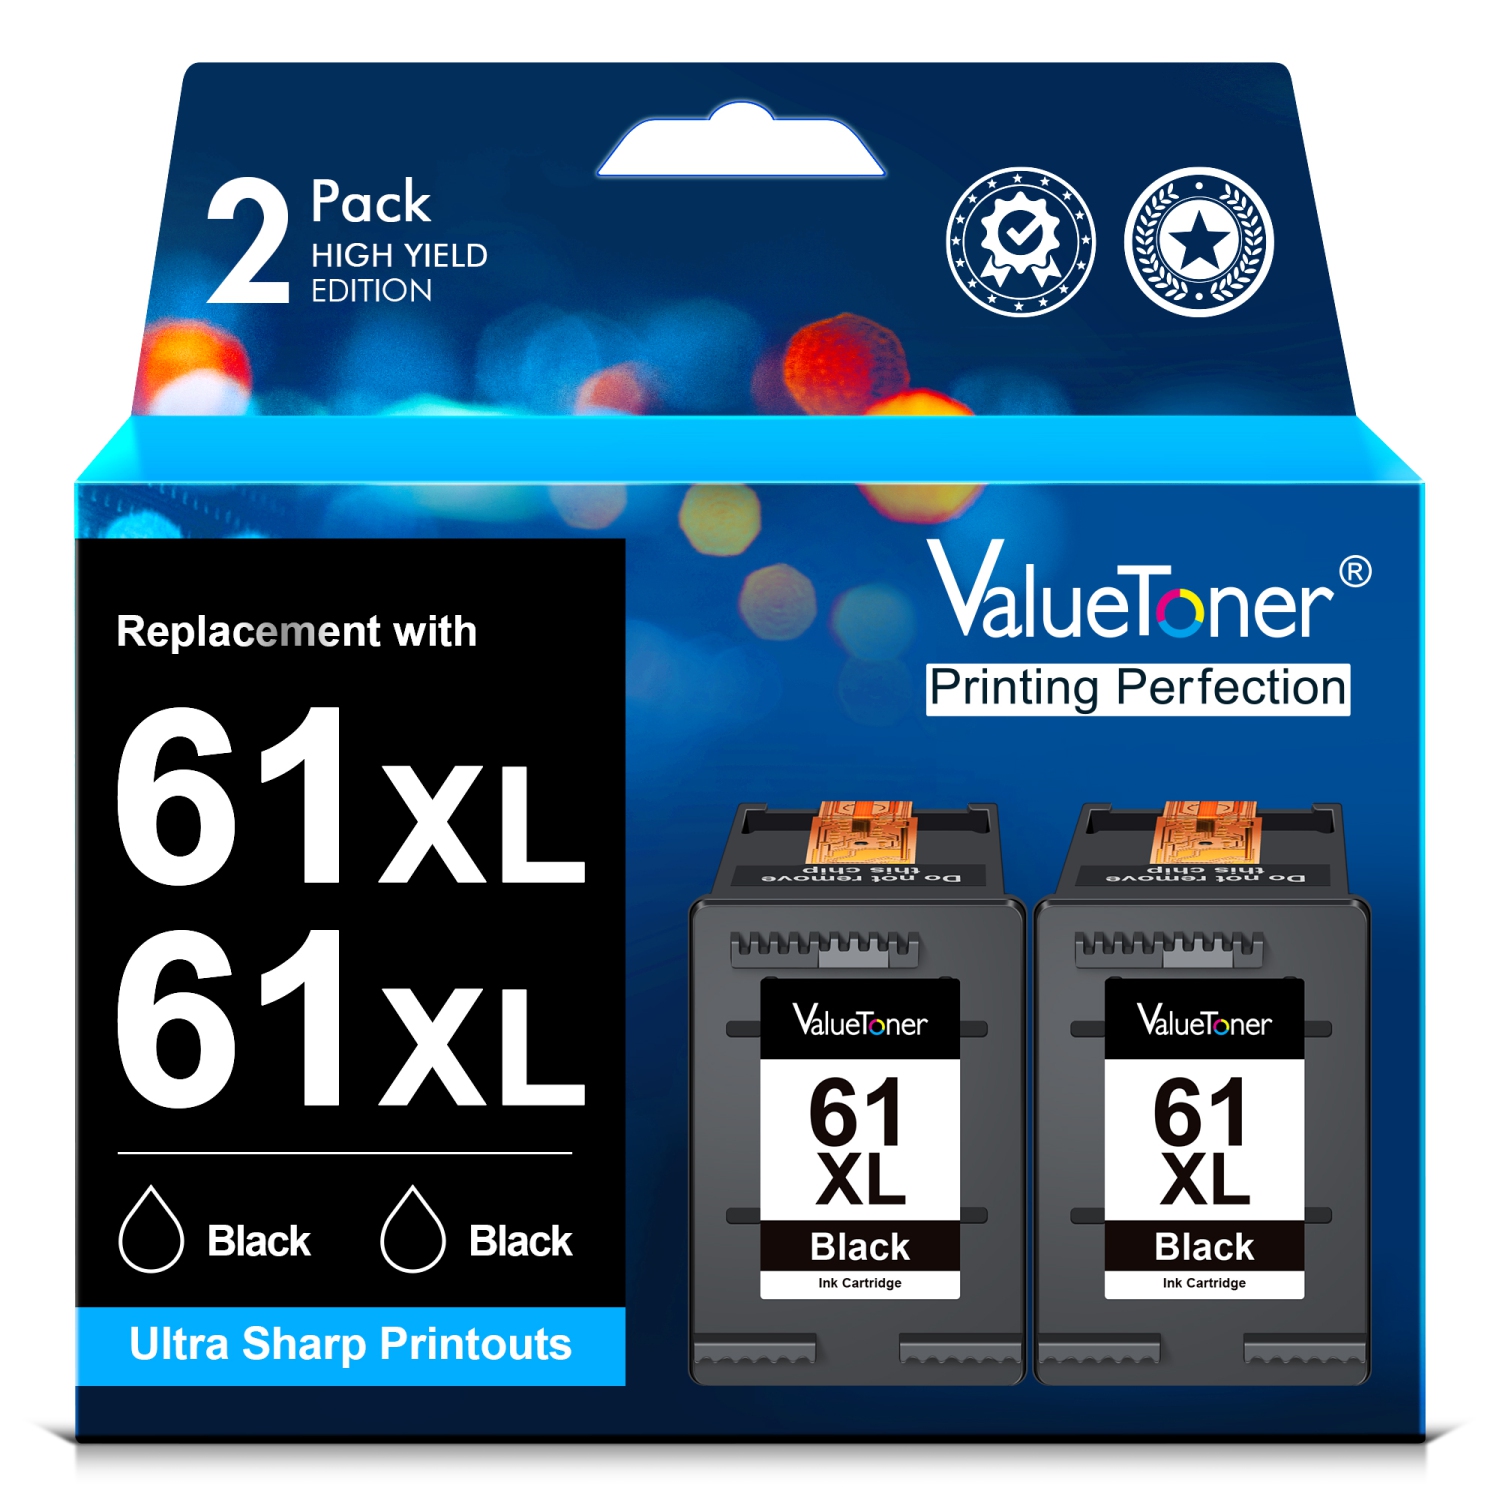 Valuetoner Refurbished (Excellent) Ink Cartridges Replacement for HP 61XL 61 XL for HP Envy 4500 4501 4502 5530 Deskjet 2540 30501000 1050 1056 (2 Black)